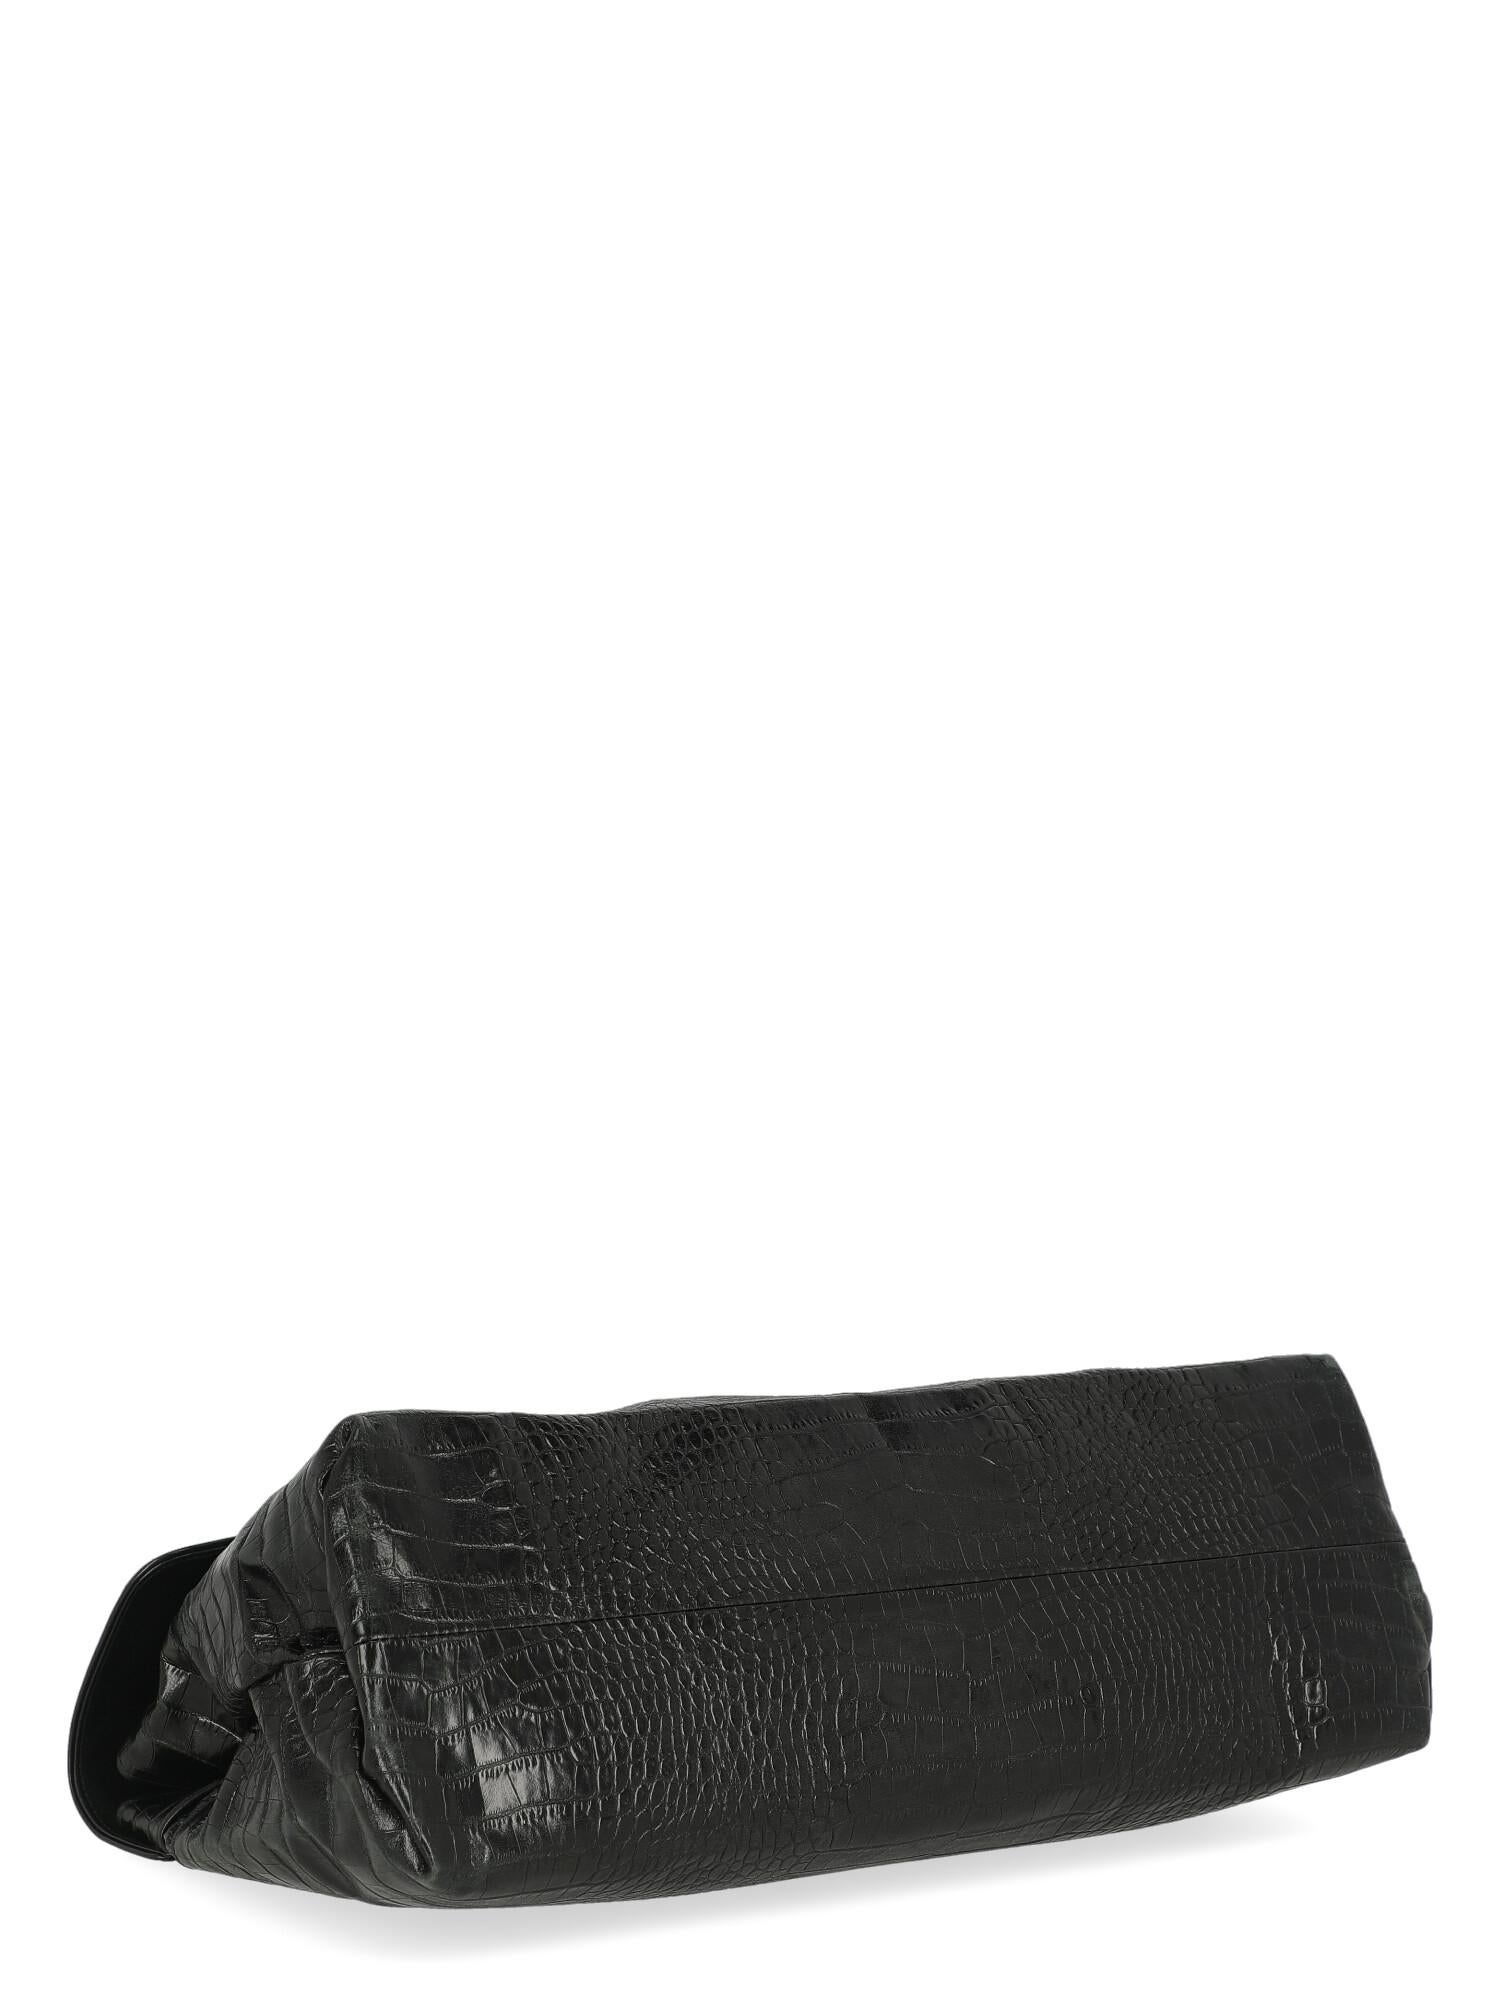 Dries Van Noten Women Handbags Black Leather  For Sale 1